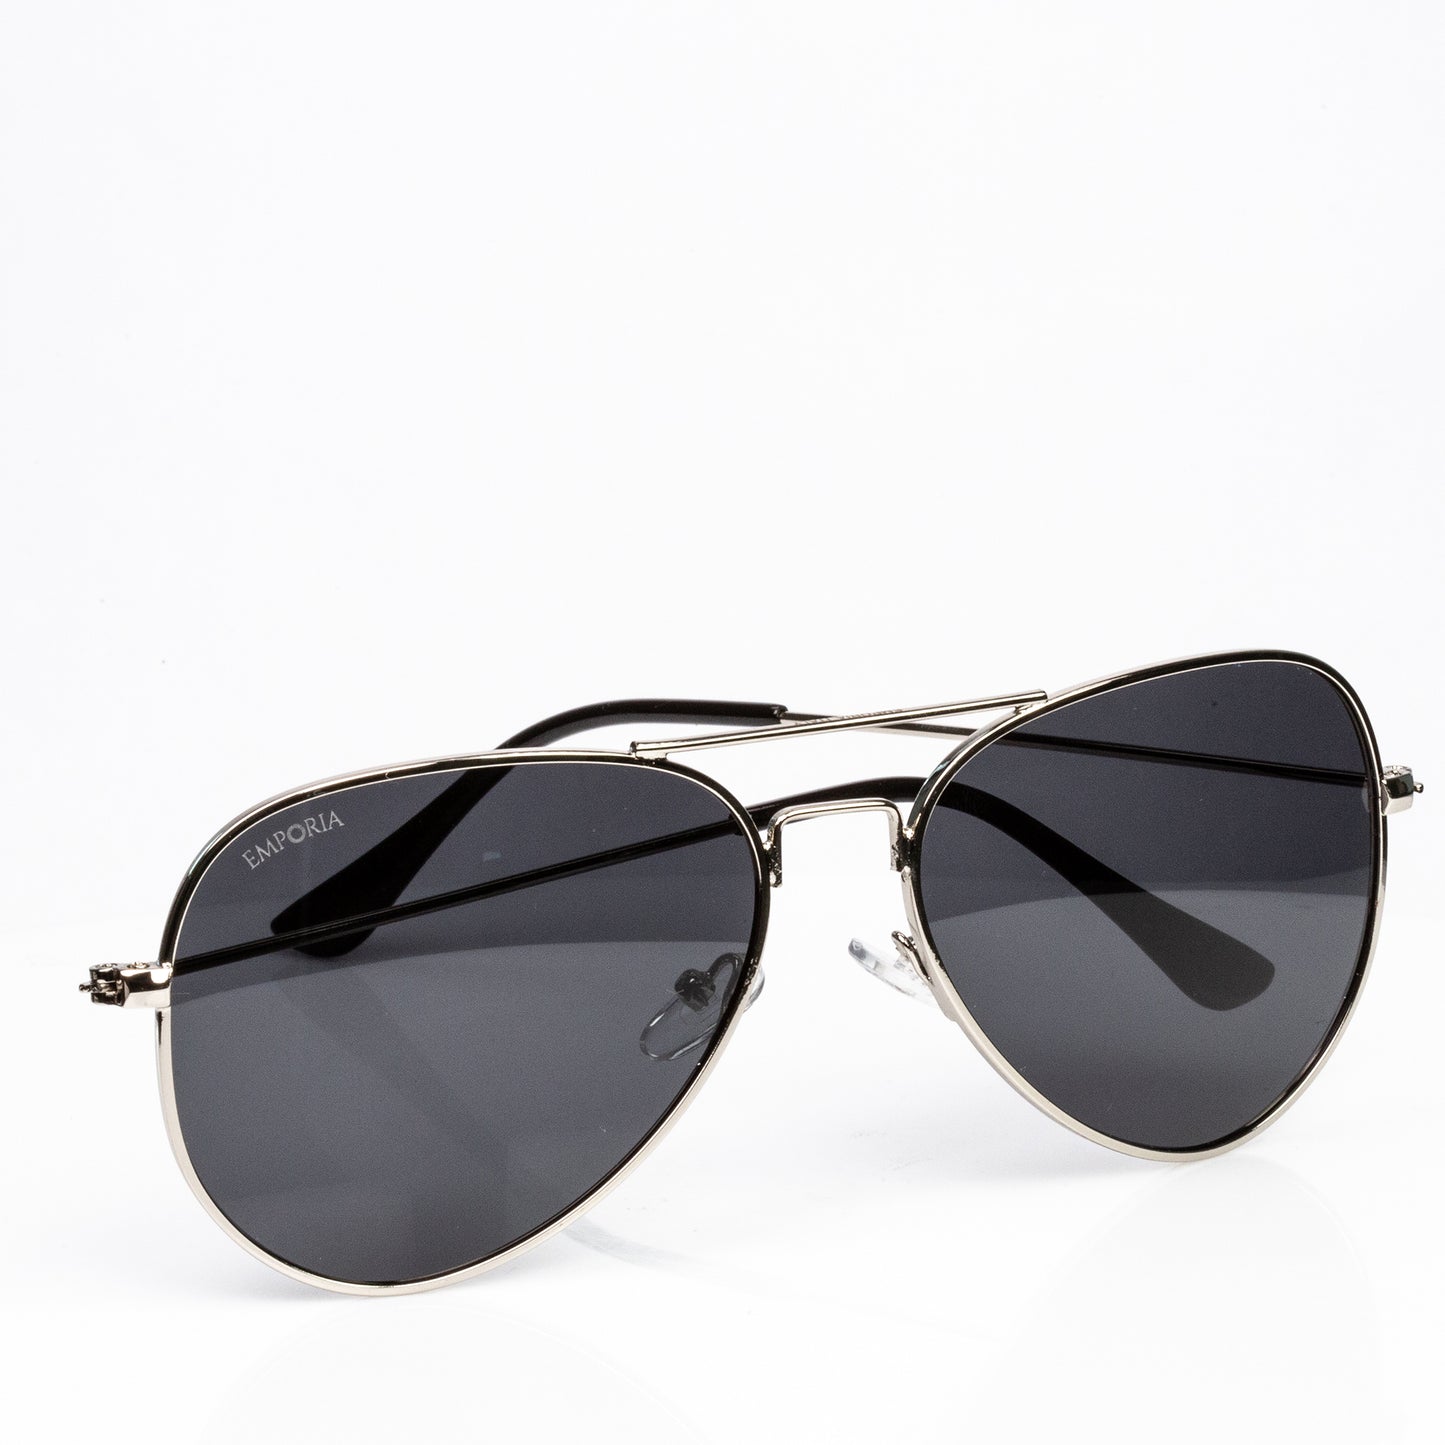 Emporia Italy - Gafas de sol piloto "JEFE", gafas de sol polarizadas con filtro UV con estuche y paño de limpieza, lentes gris oscuro, montura plateada